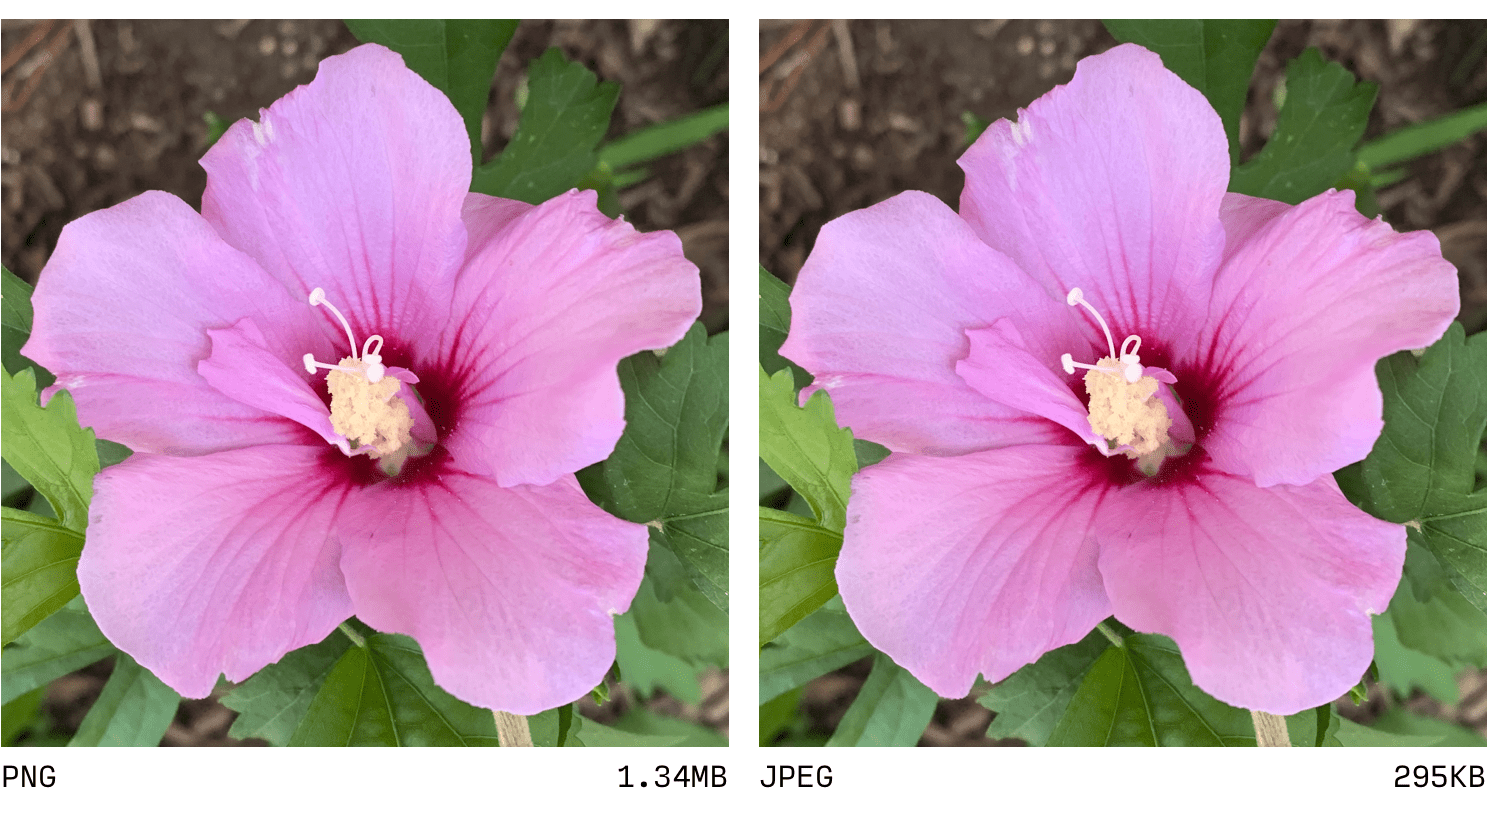 So sánh JPEG và PNG.